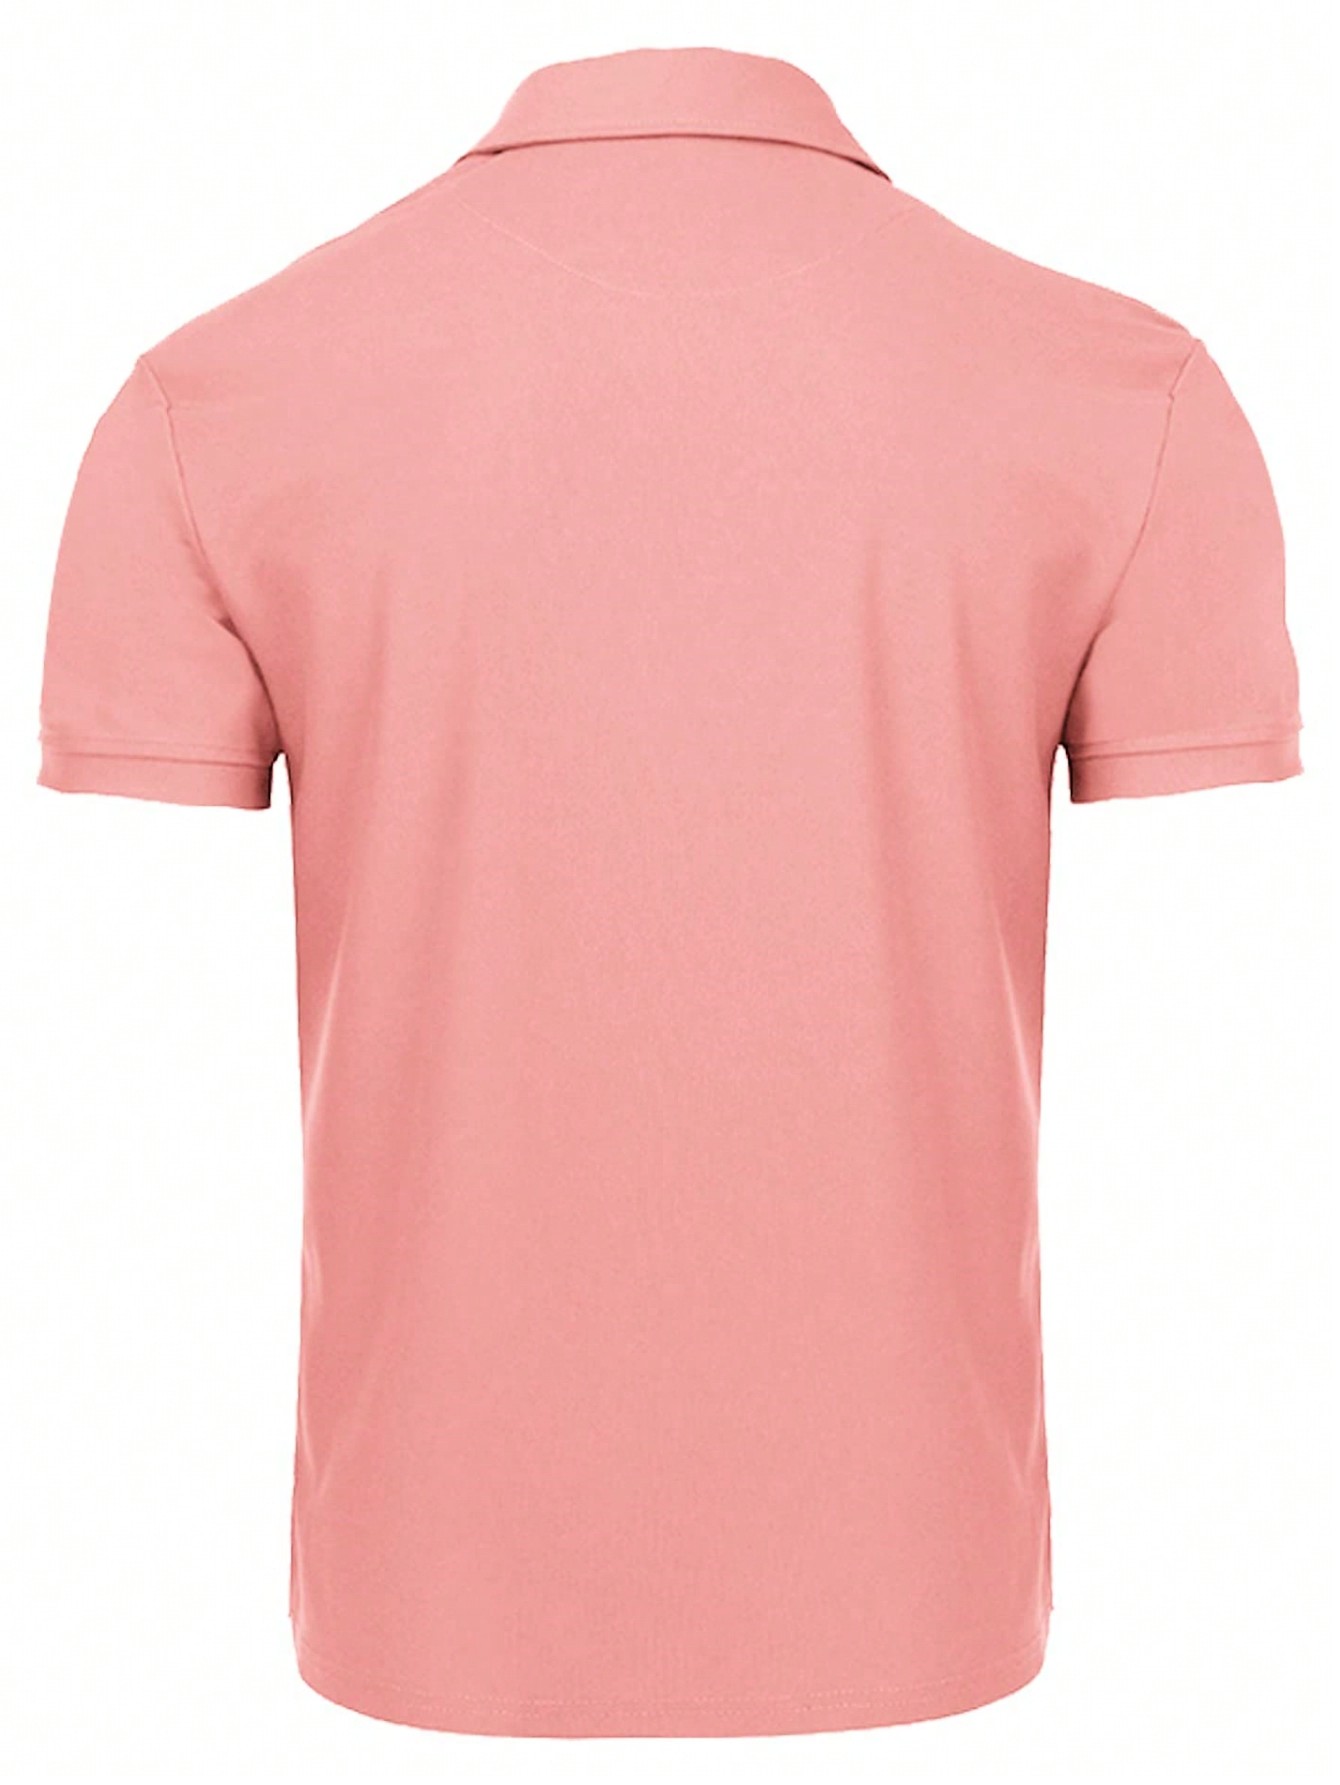 Мужская рубашка поло с коротким рукавом для отдыха, арбуз розовый летняя тонкая стильная ледяная рубашка поло с лацканами мужская футболка большого размера с коротким рукавом мужская свободная футболка